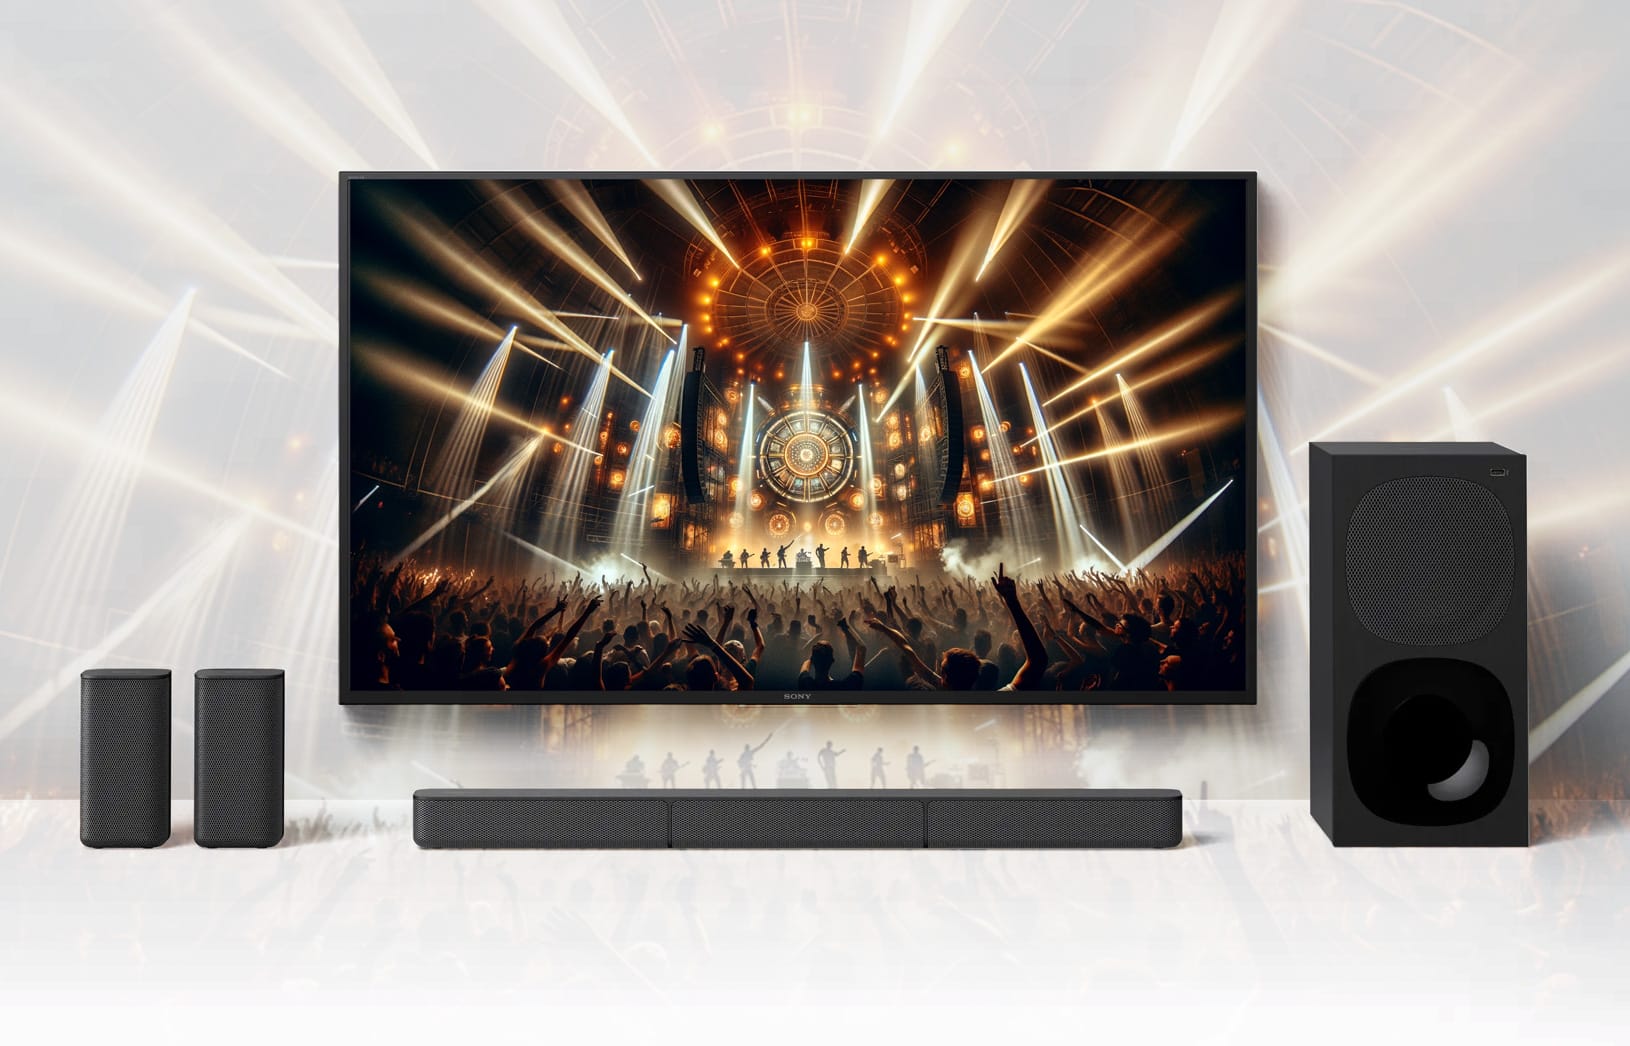 Sony bringt beliebte Markt! 4K HT-S20R zurück - Filme Soundbar-Kombi auf den